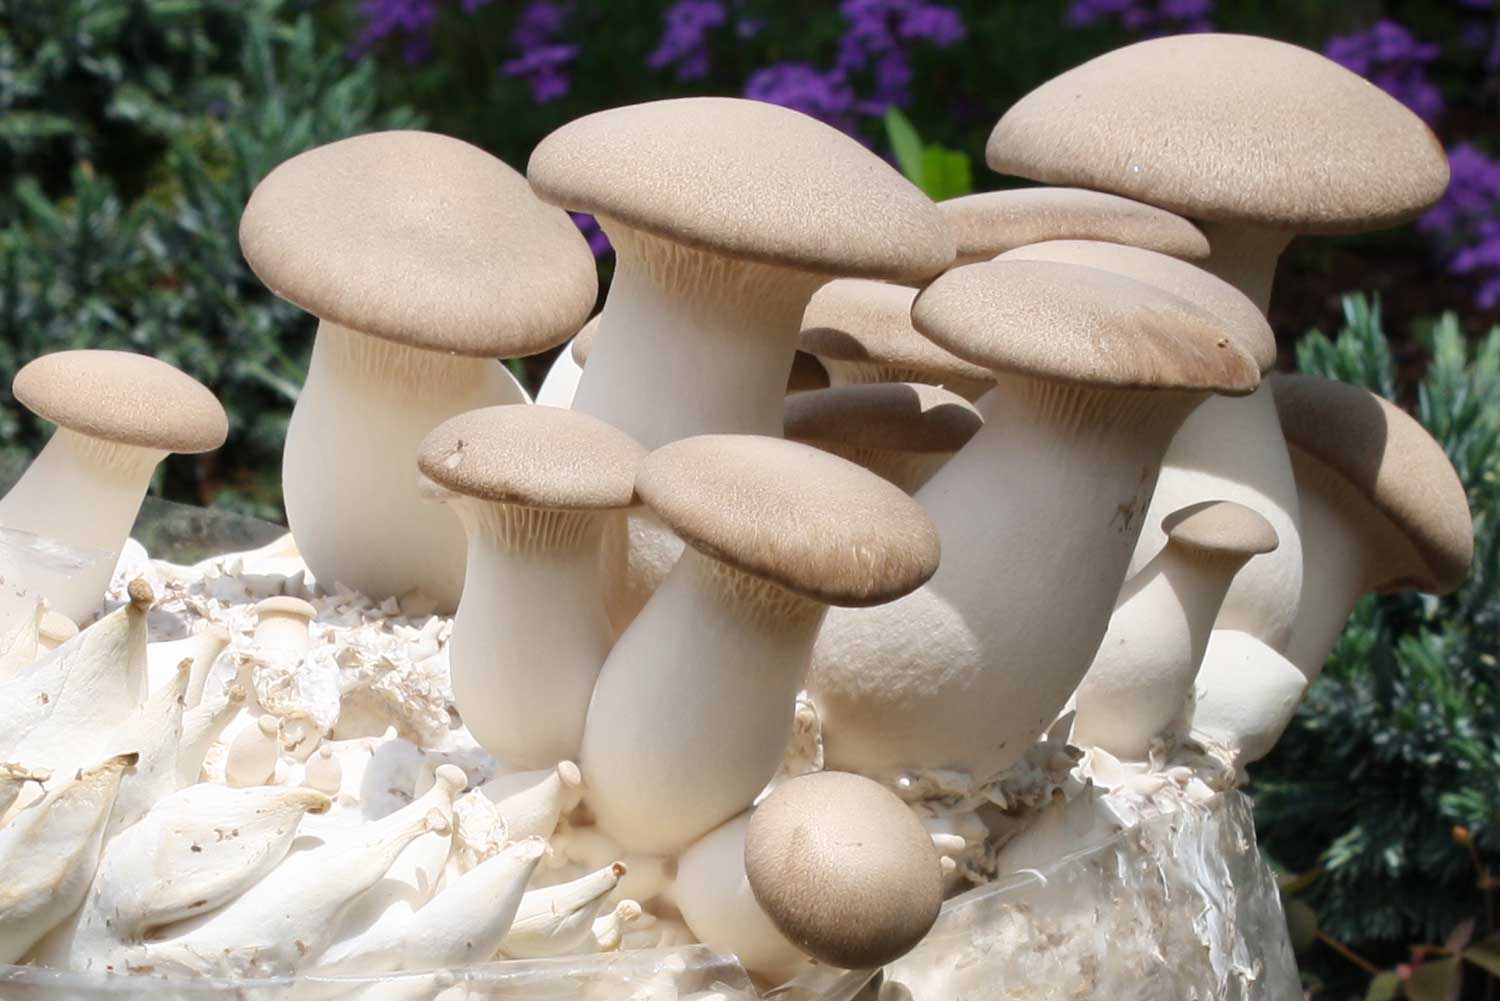 King Trumpet mushroom (Pleurotus eryngii)